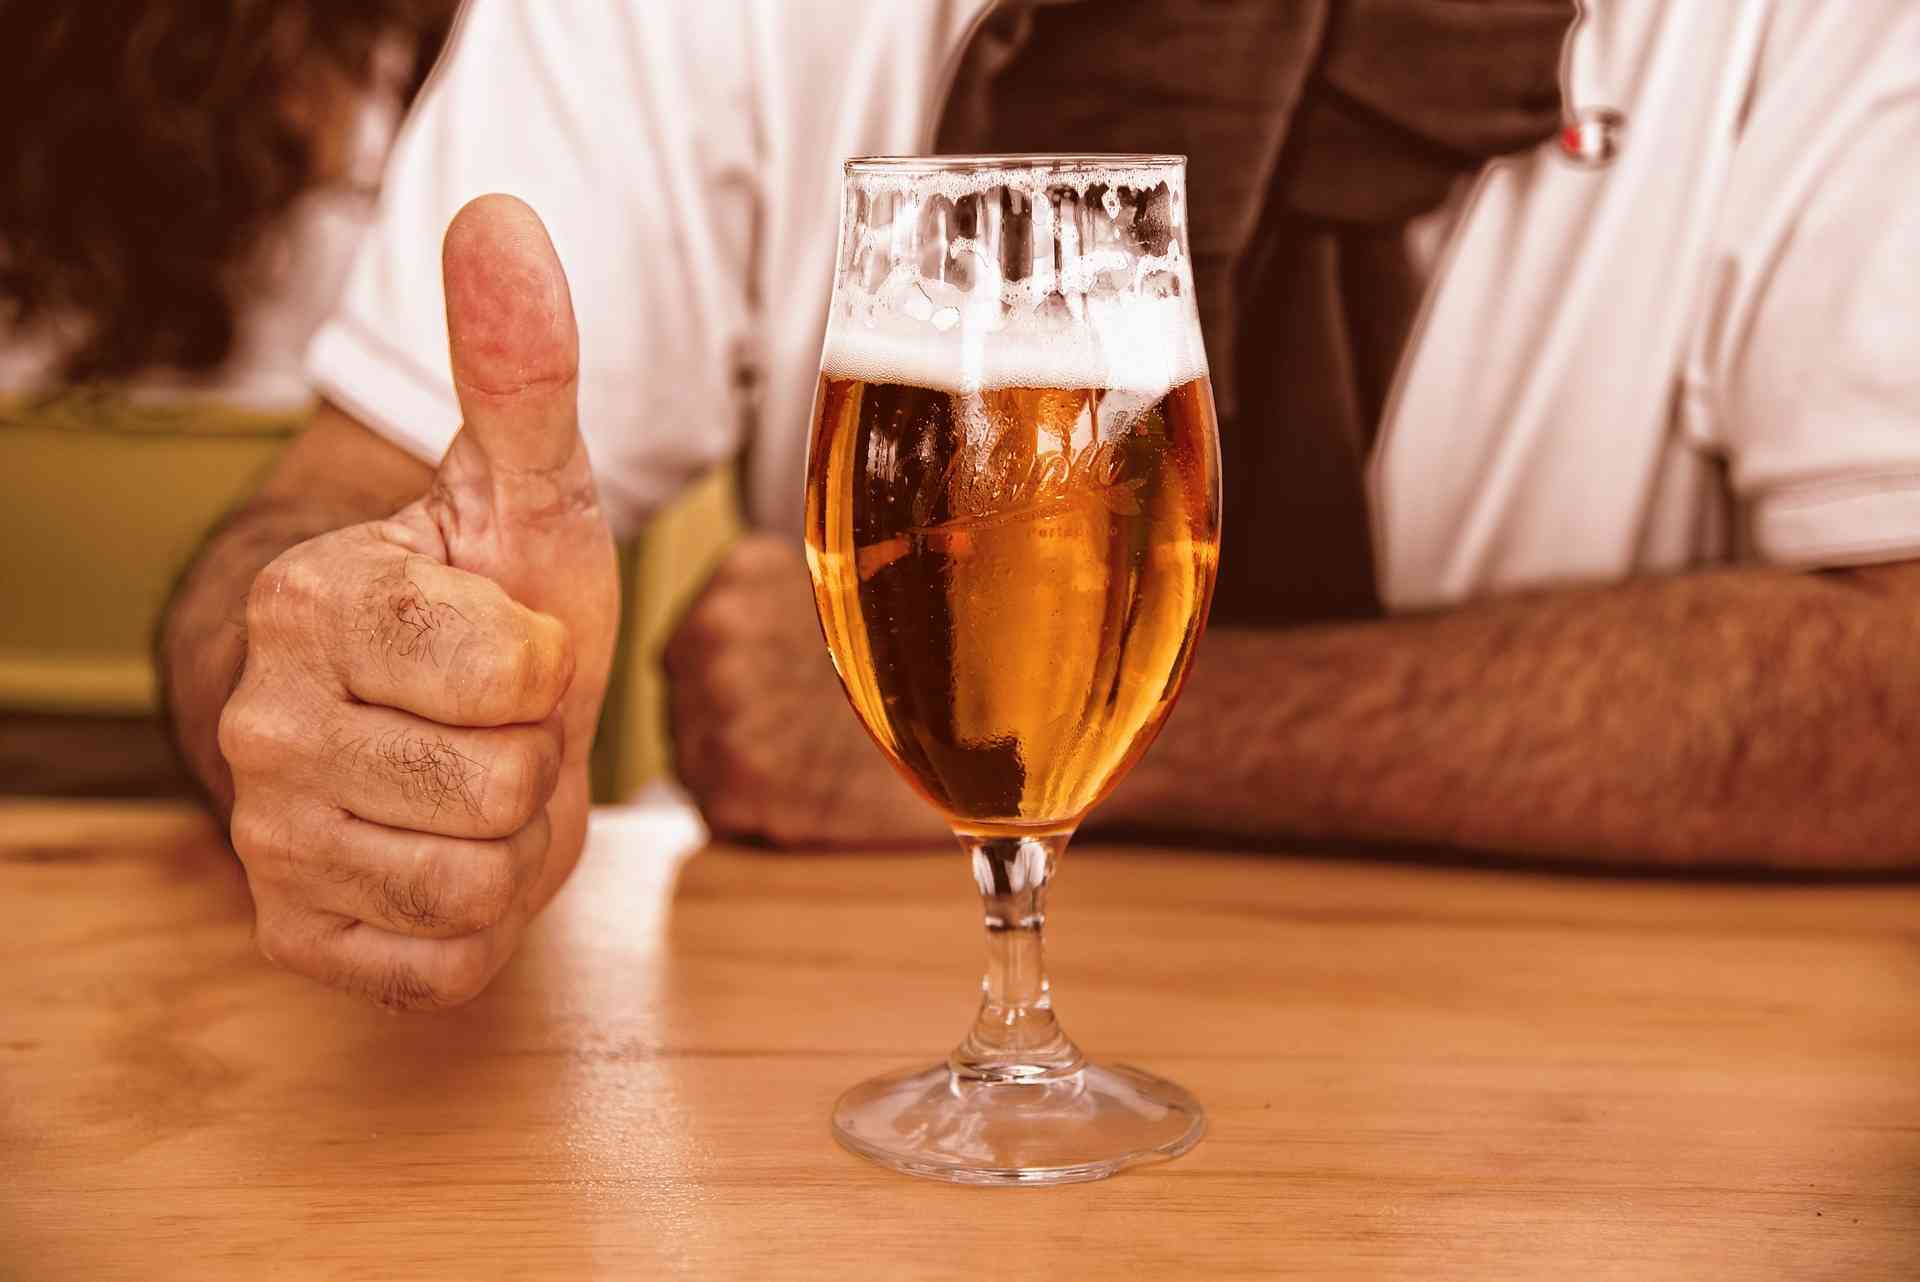 Ceo život pogrešno sipamo pivo u čašu i zbog toga smo naduti